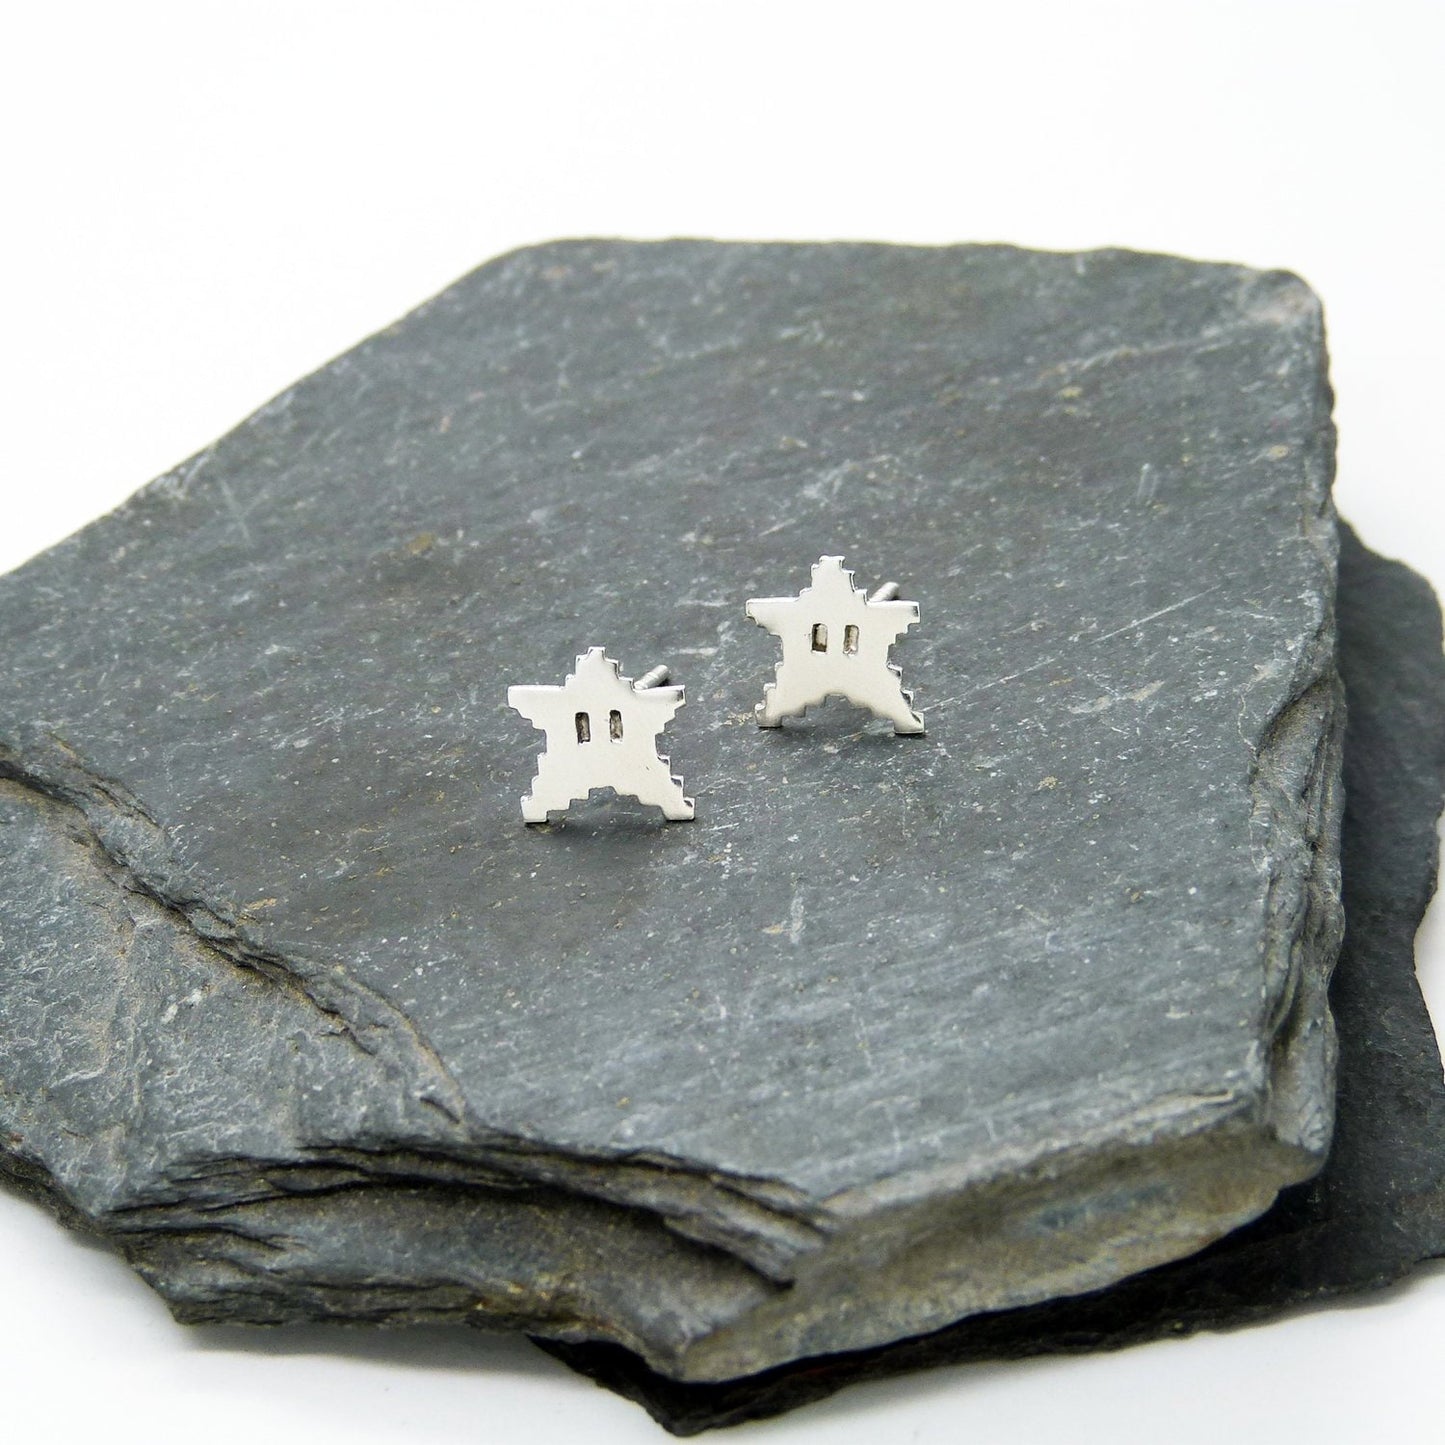 8-bit Stars earrings in 925 silver